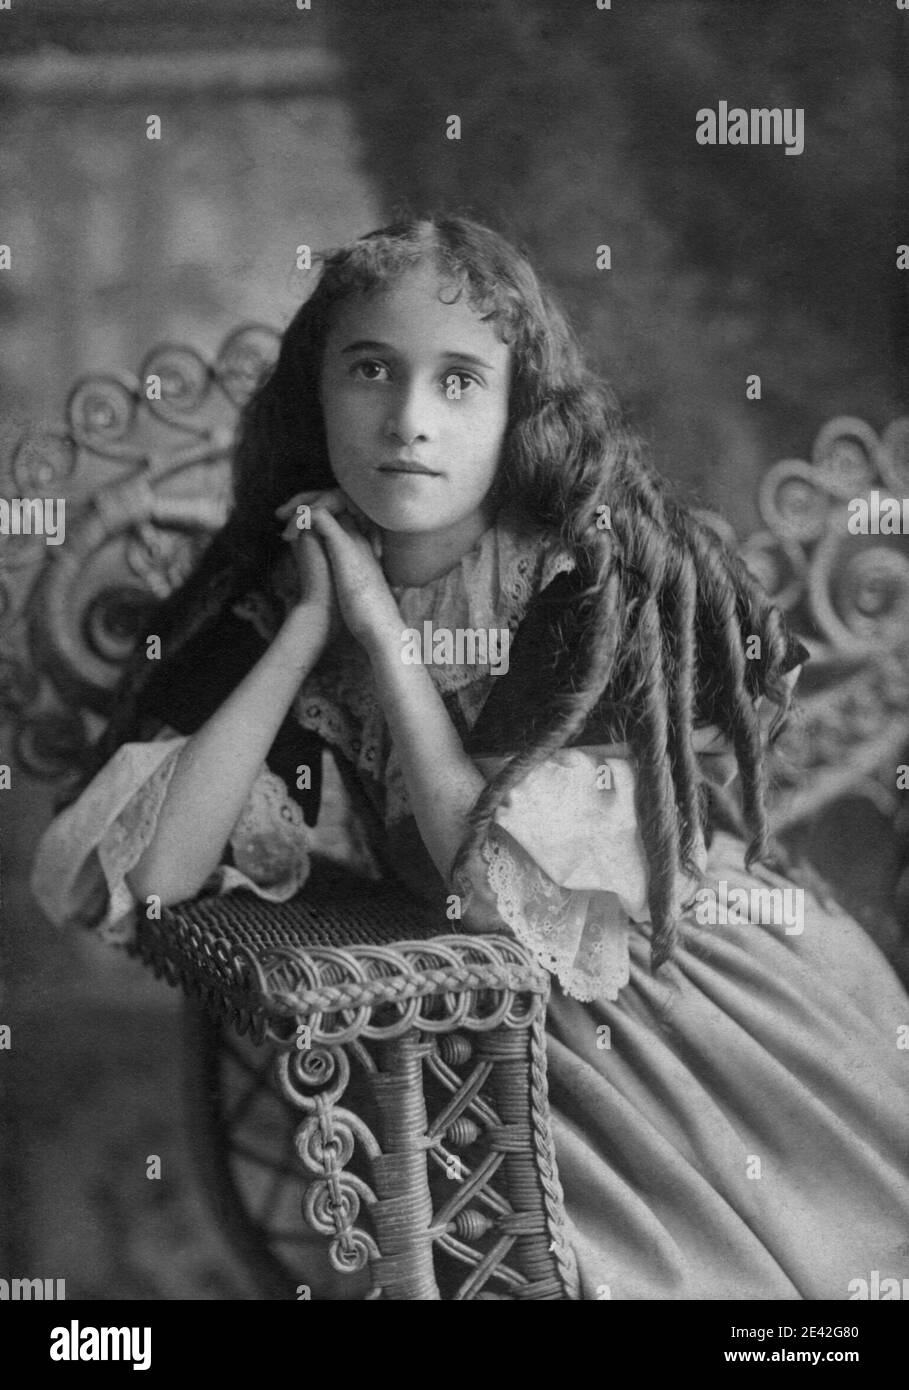 Porträt eines jungen irisch-amerikanischen Teenagers, aufgenommen um 1905 in Chicago. Stockfoto